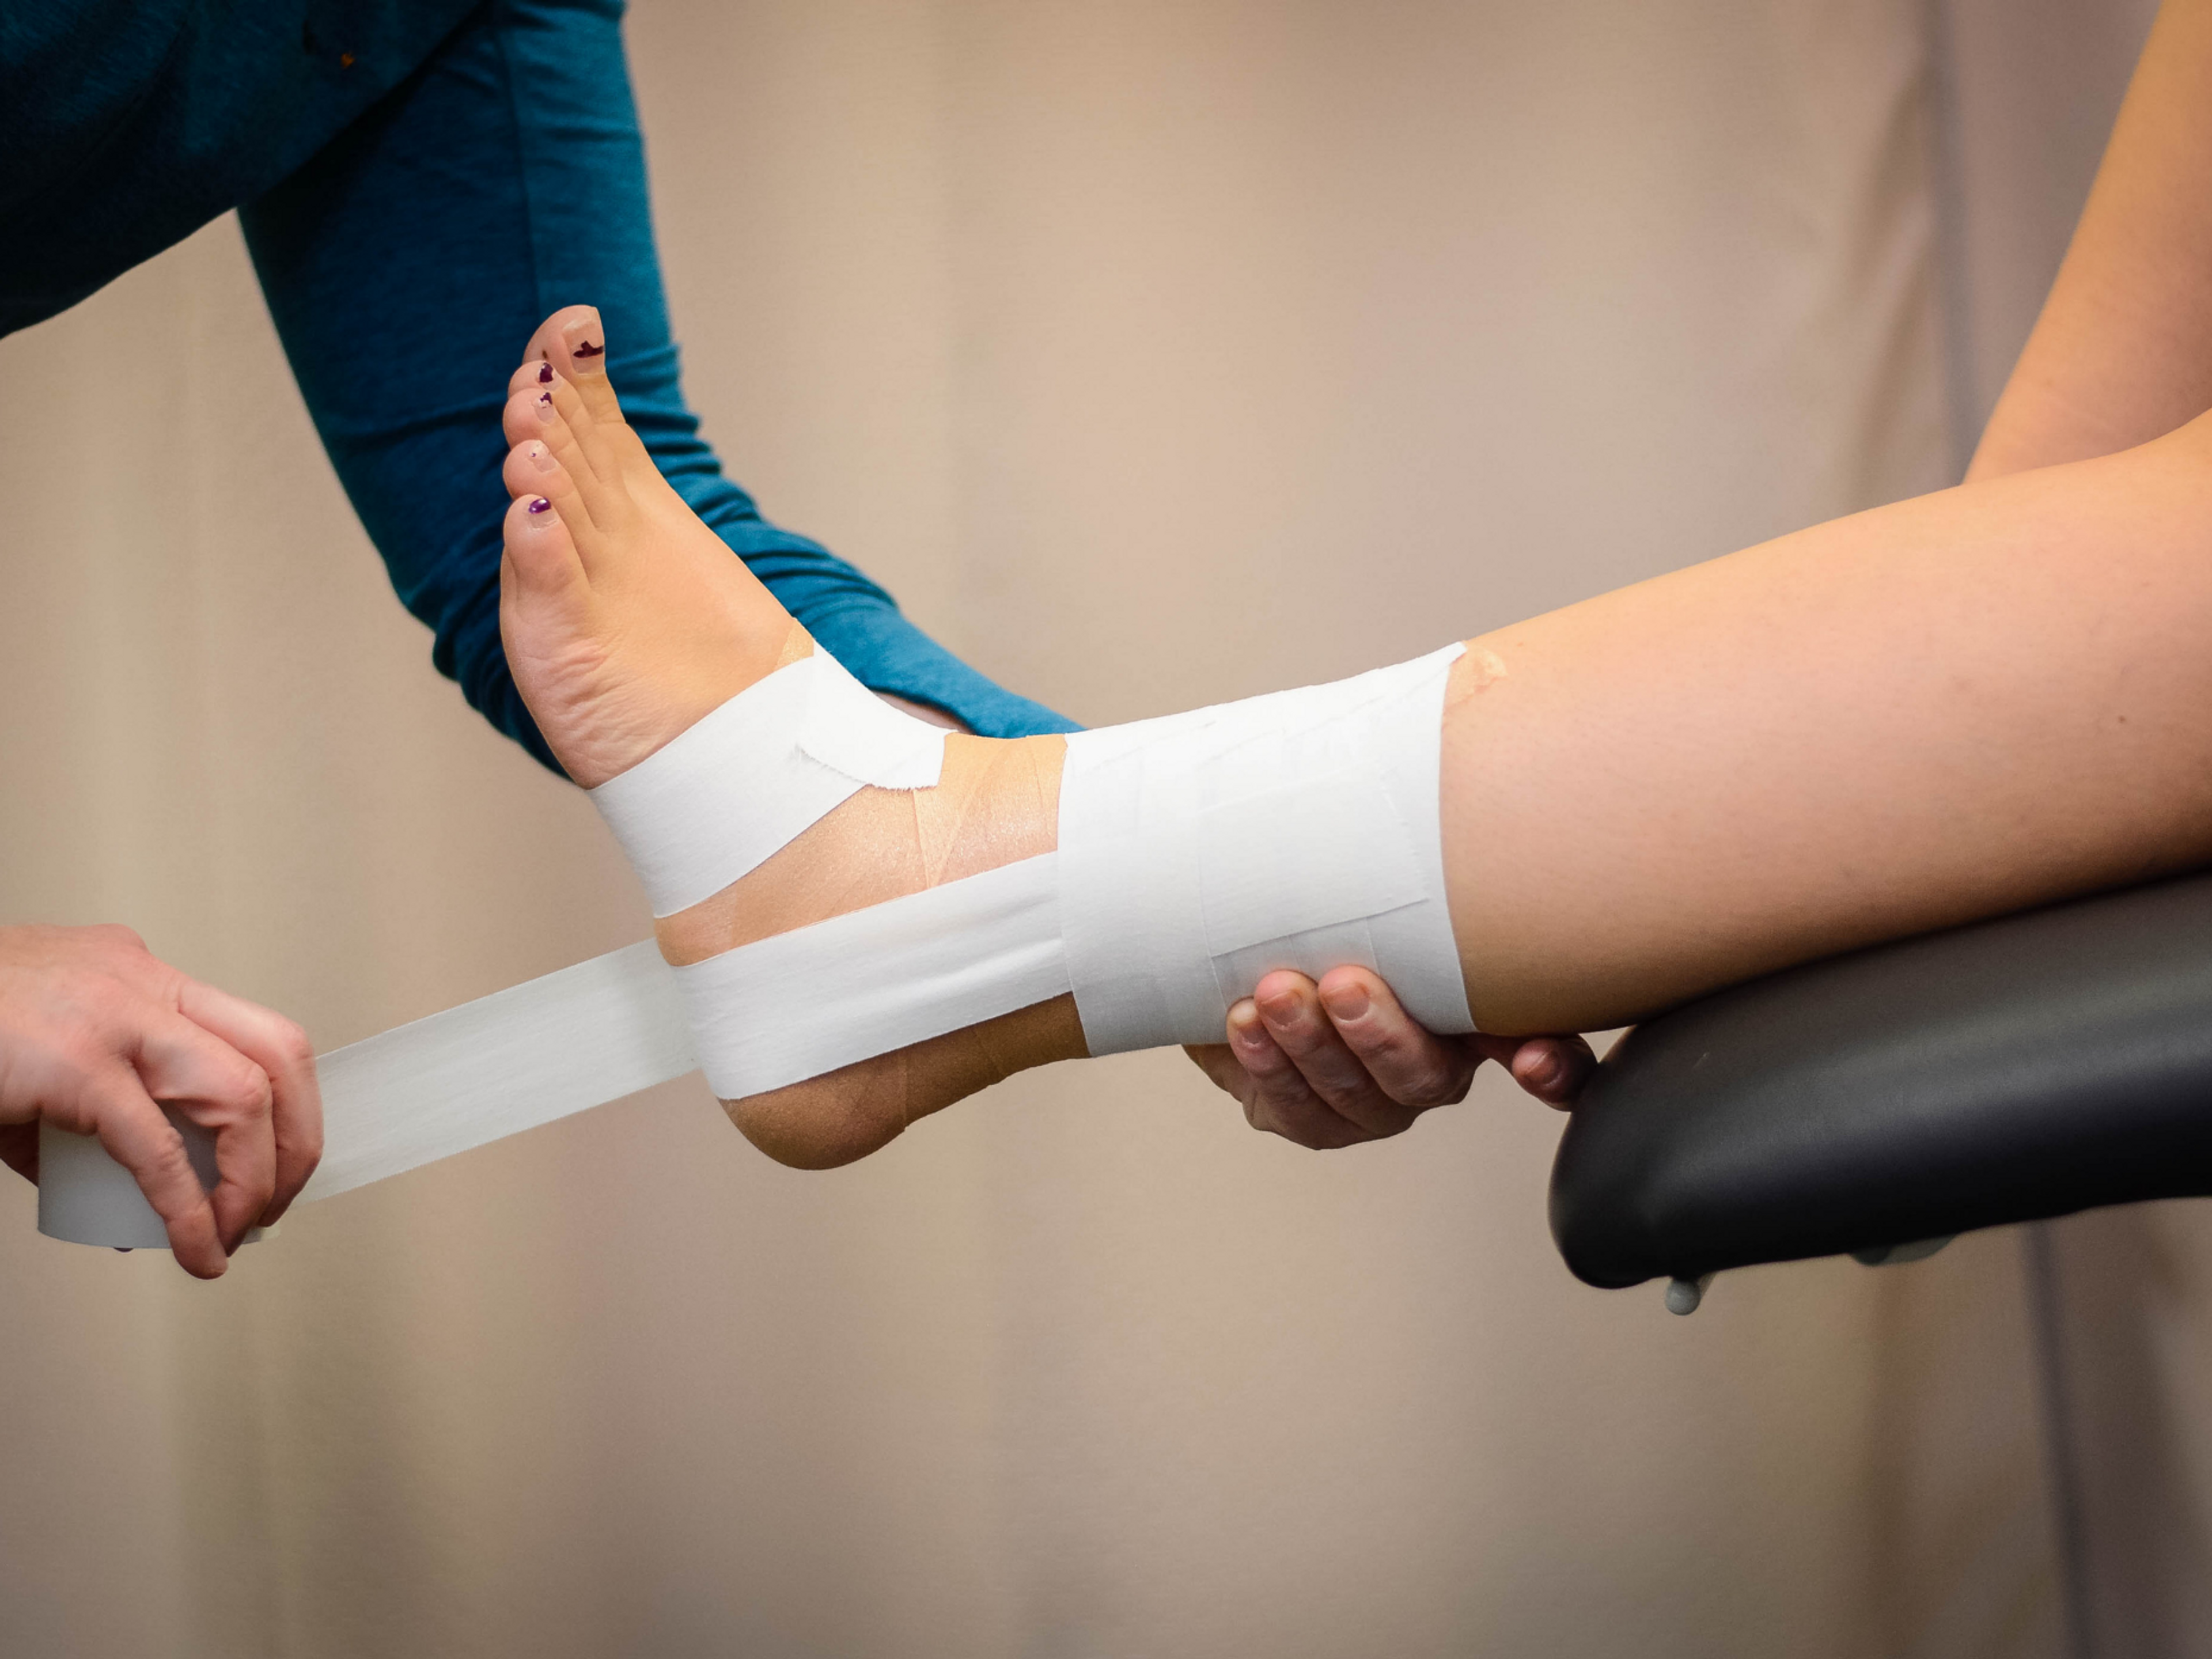 Das Umwickeln eines verstauchten Knöchels mit einem starren Zinkoxidband kann helfen, den Knöchel zu stabilisieren und eine erneute Verletzung zu verhindern.